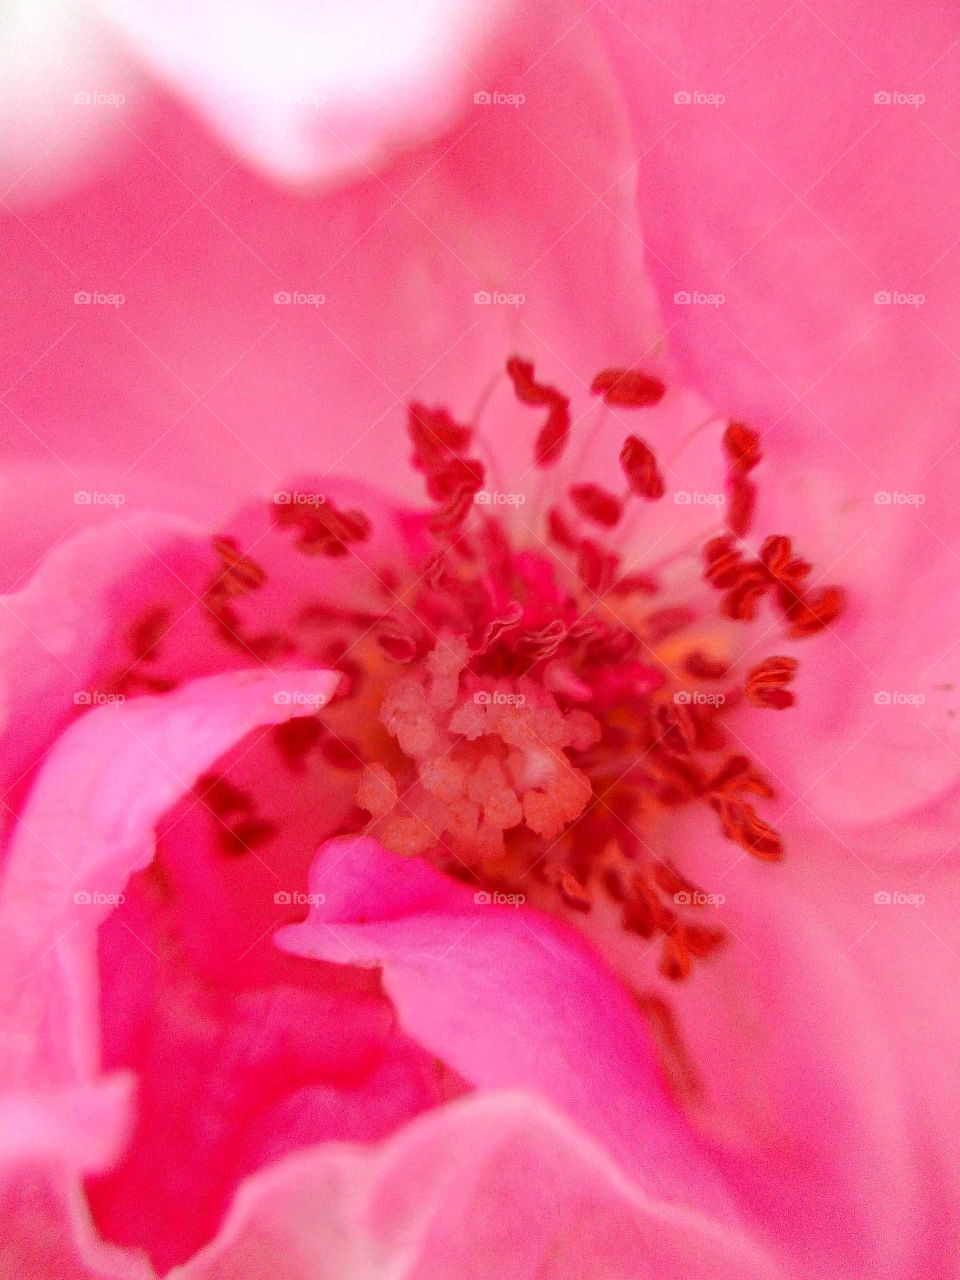 inside part of the rose flower